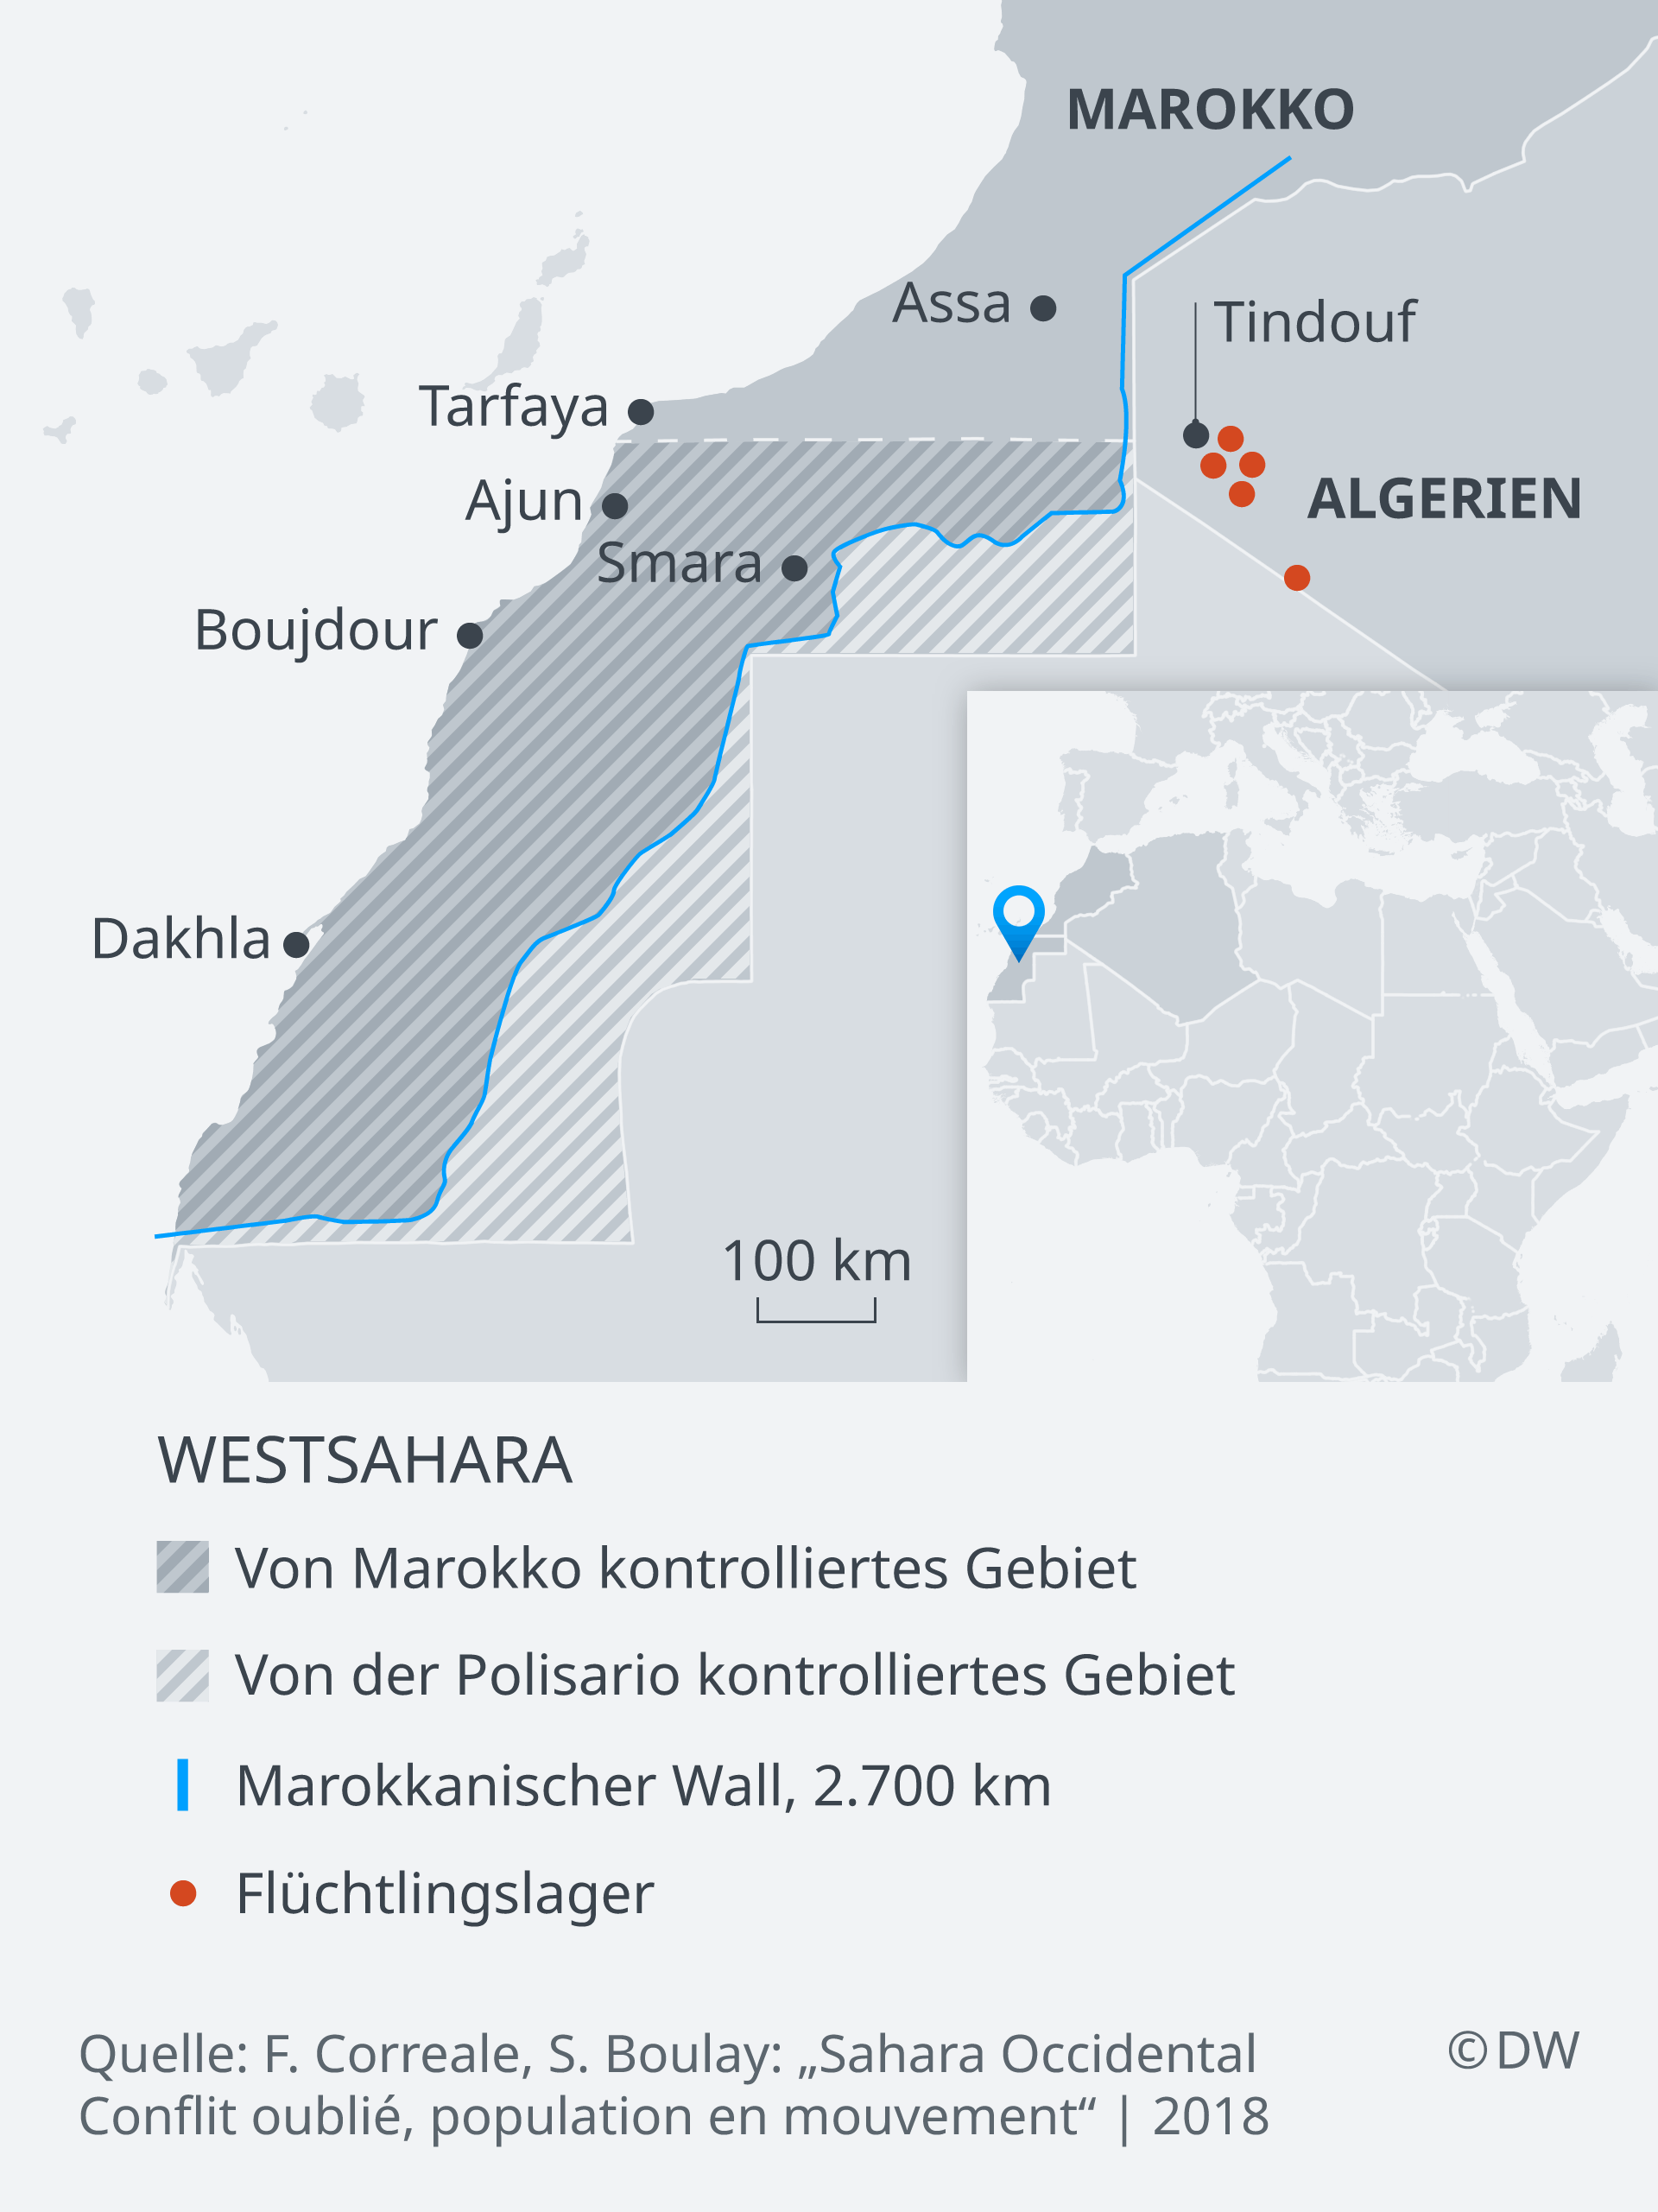 Karte der Westsahara und der angrenzenden Staaten Nordafrikas; Quelle: DW